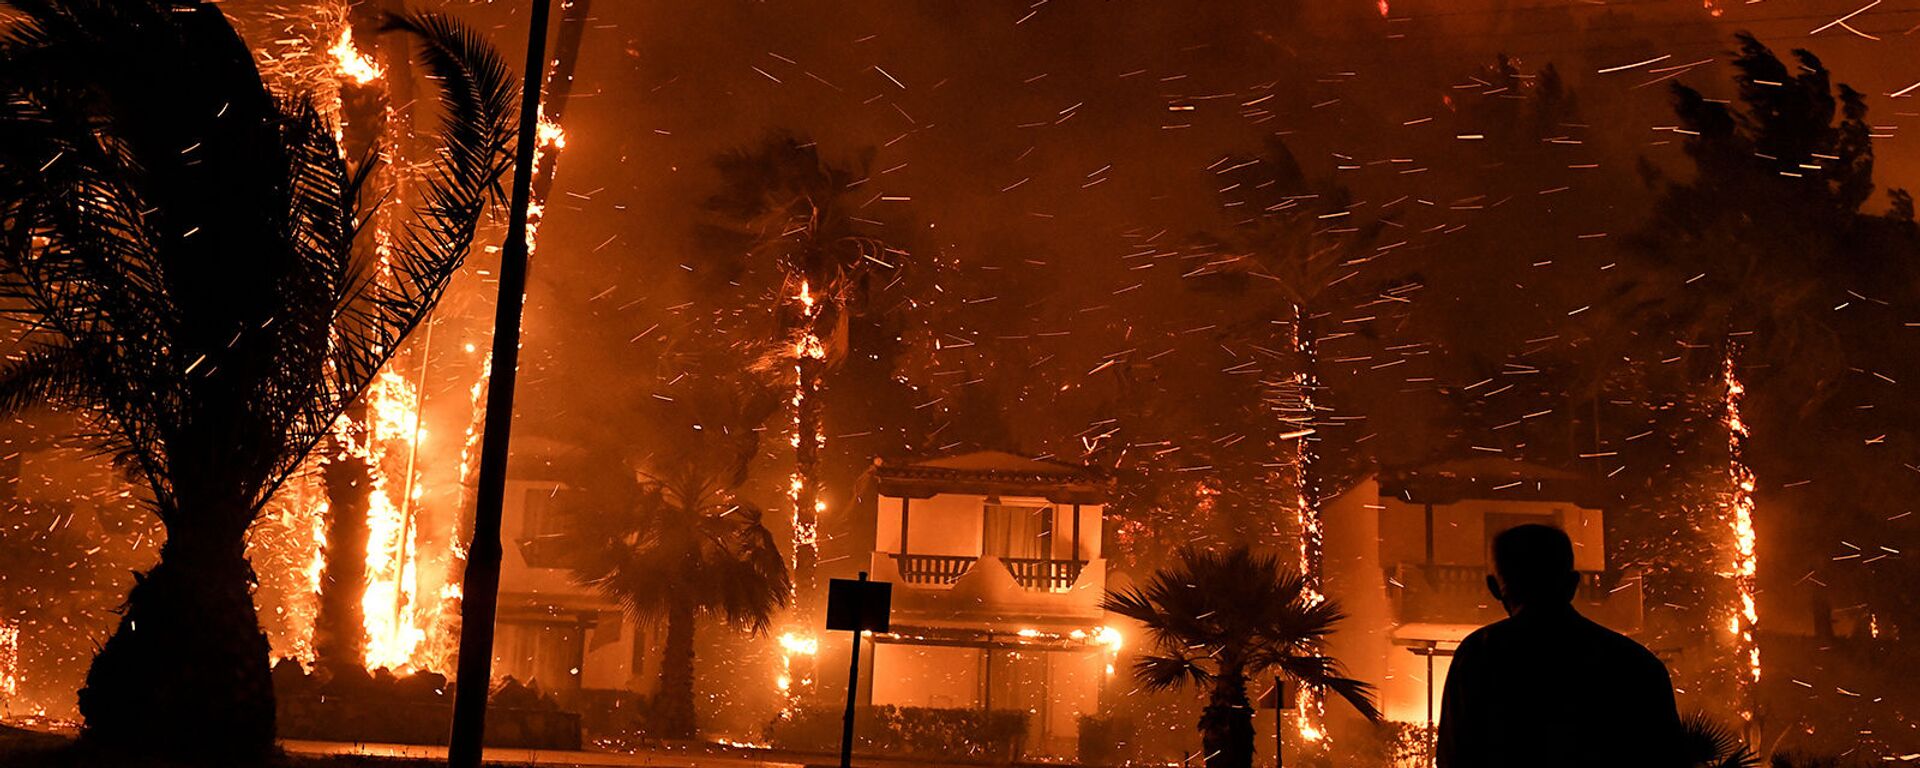 Местный житель среди горящих от лесного пожара домов в деревне Схинос (19 мая 2021). Греция - Sputnik Արմենիա, 1920, 21.05.2021